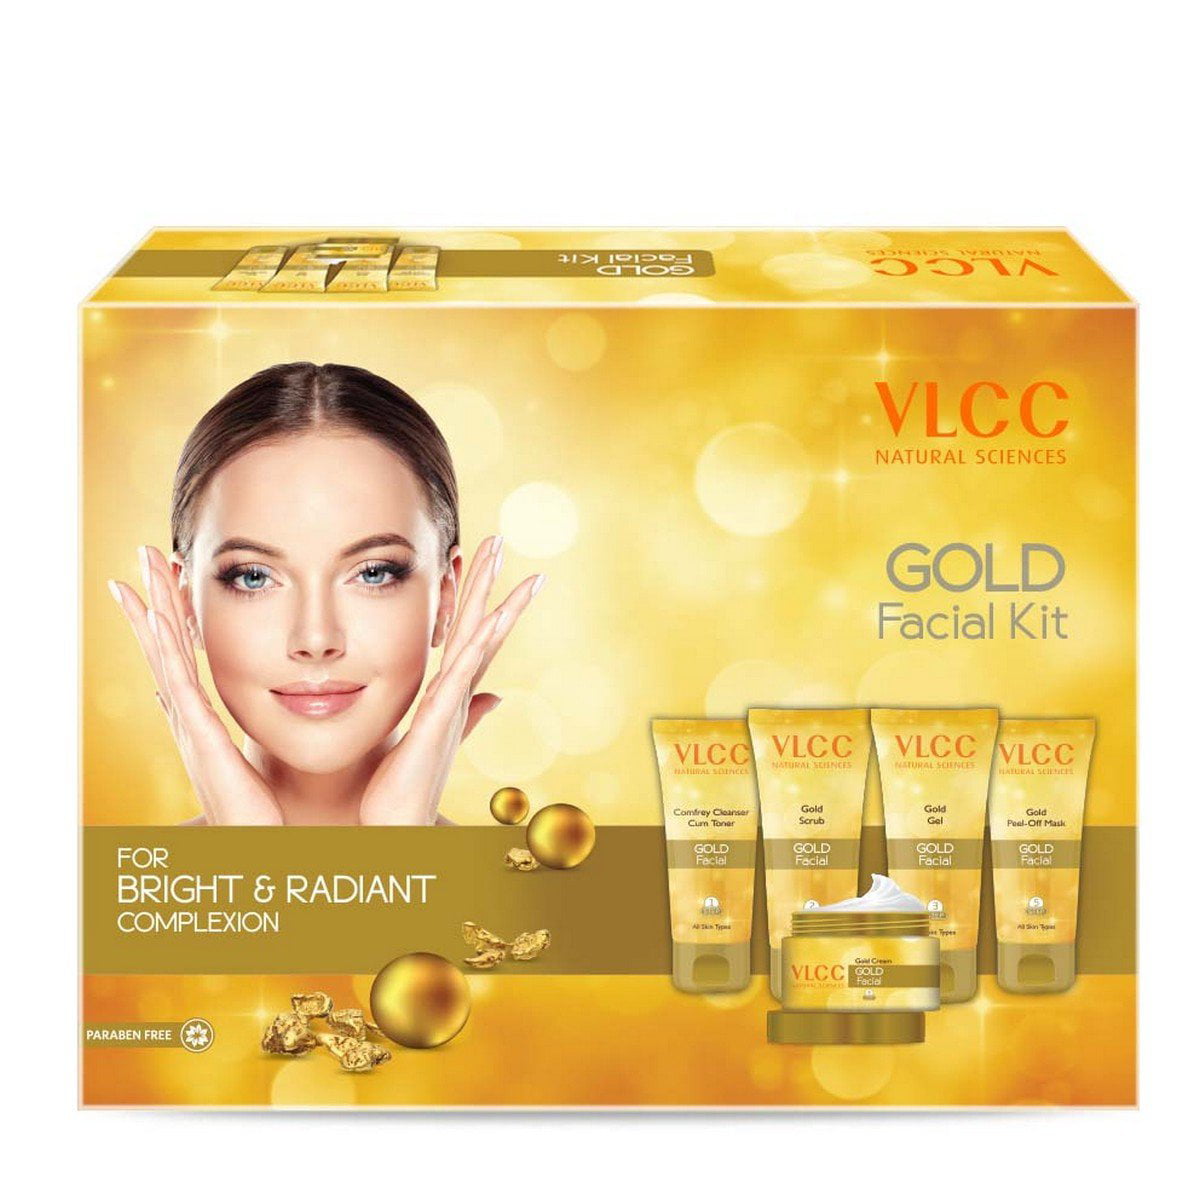 vlcc anti aging facial kit price